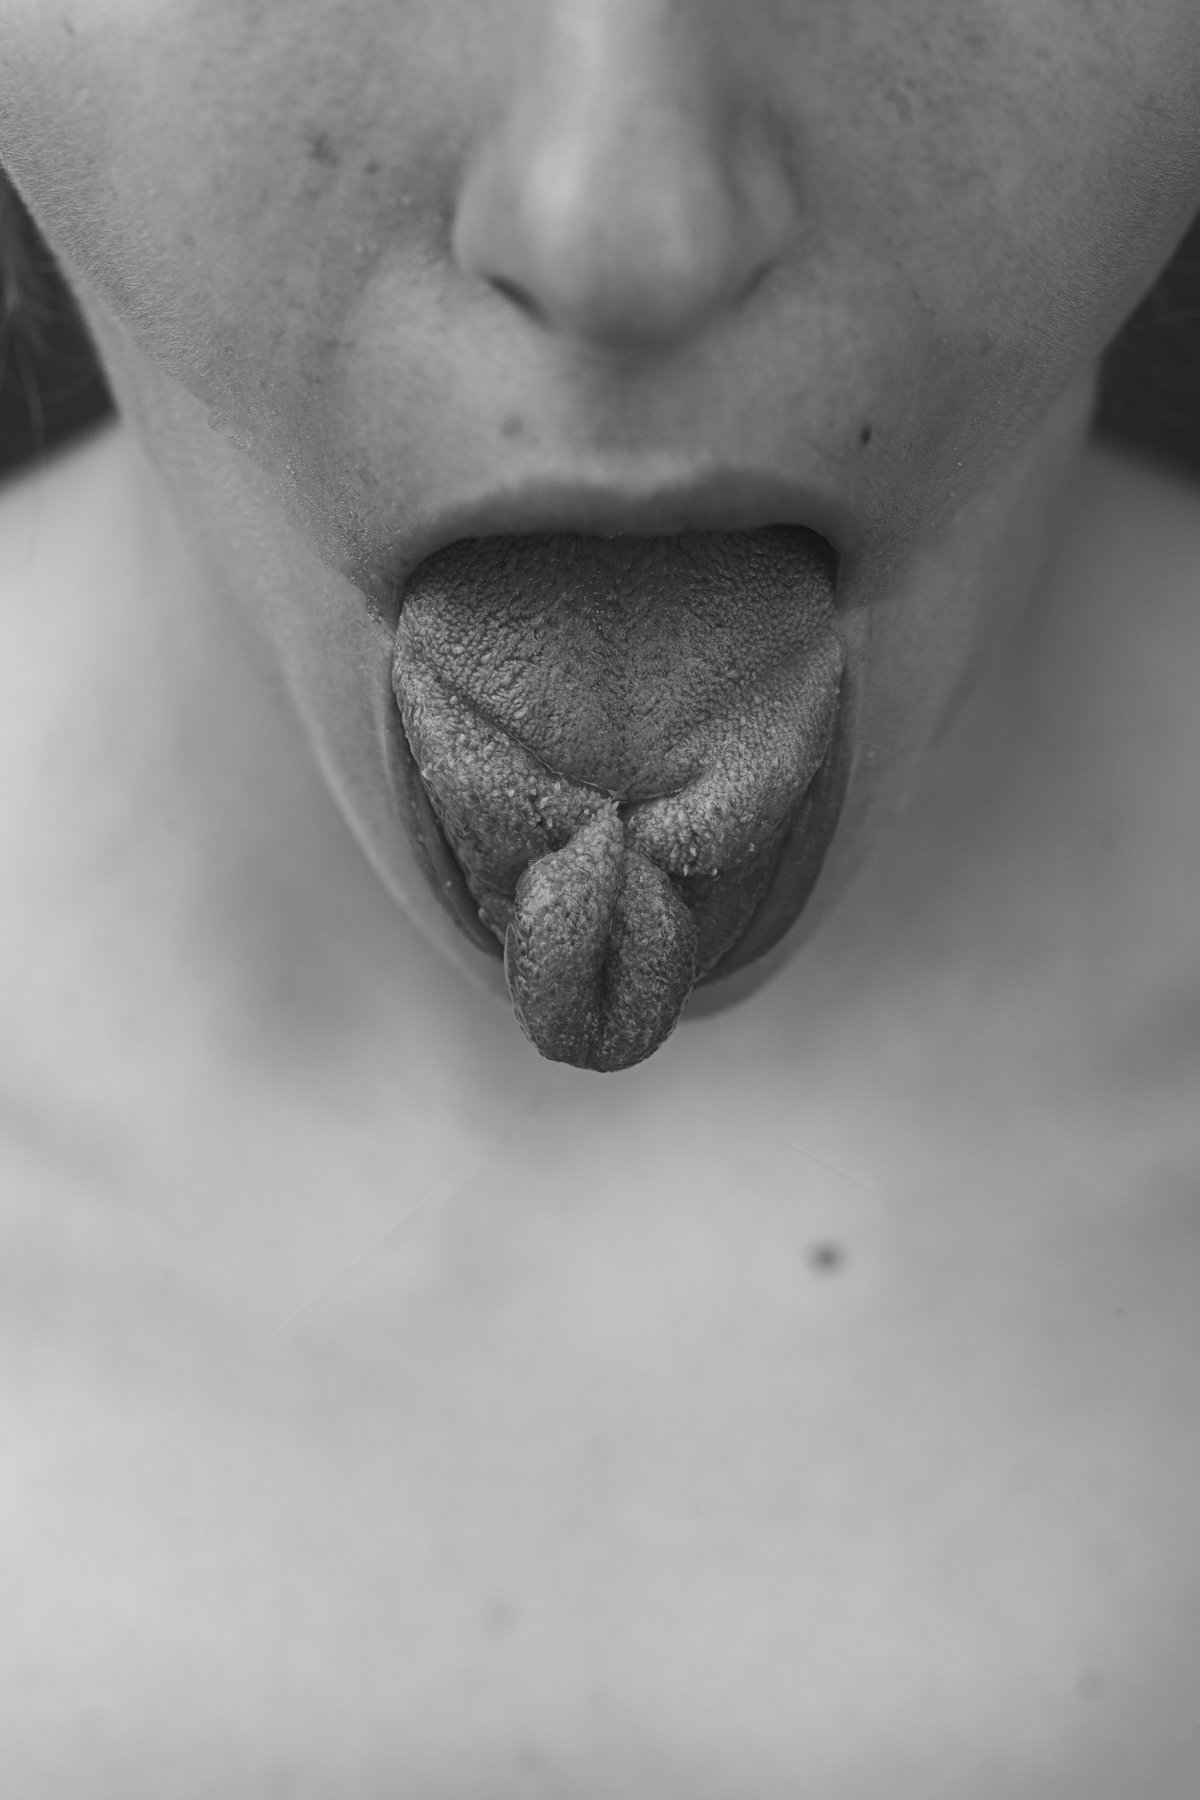 #tongue, Riccardo Nosvelli